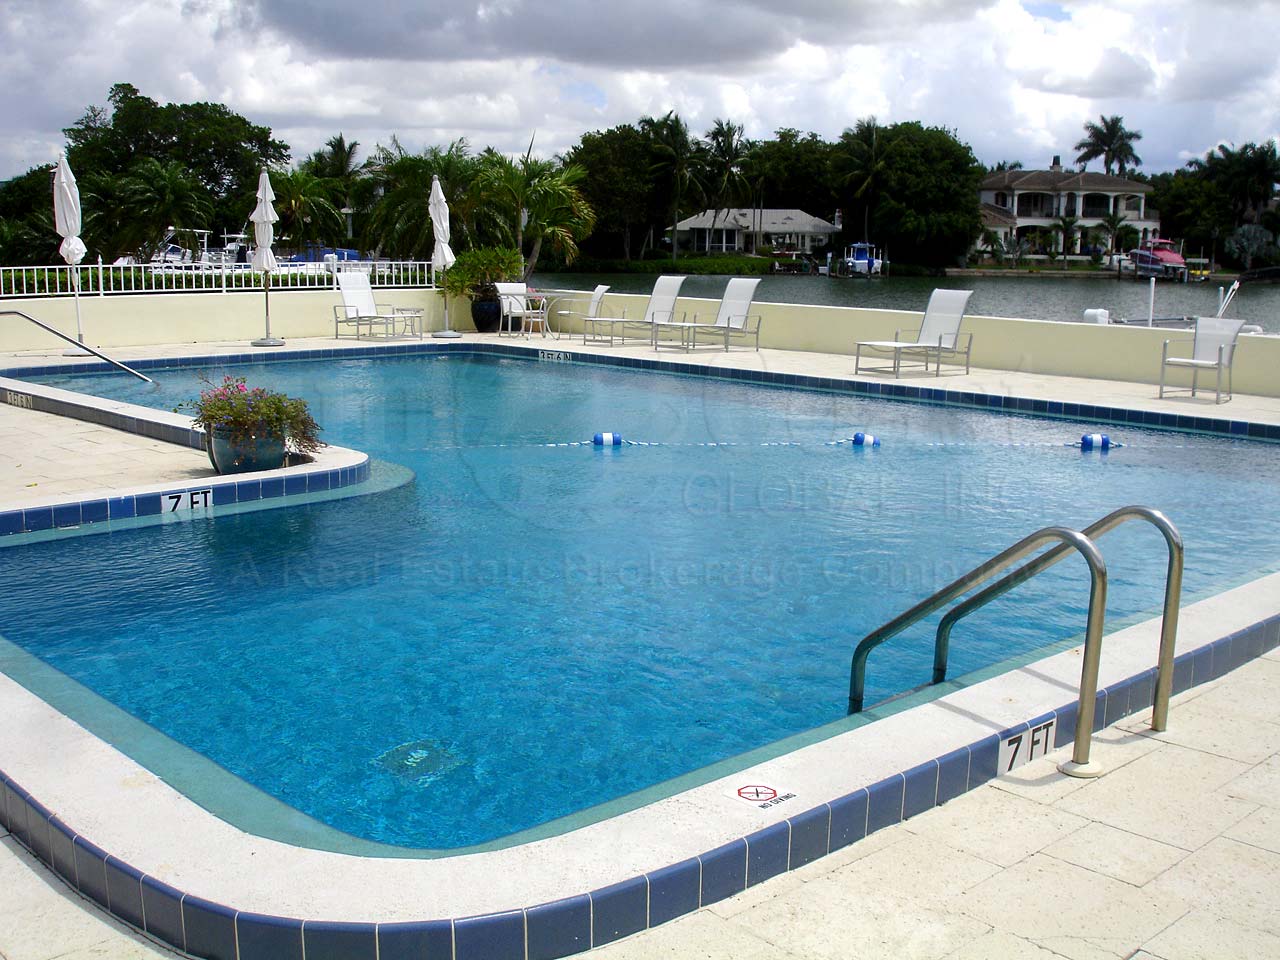 Boulevard Club Community Pool